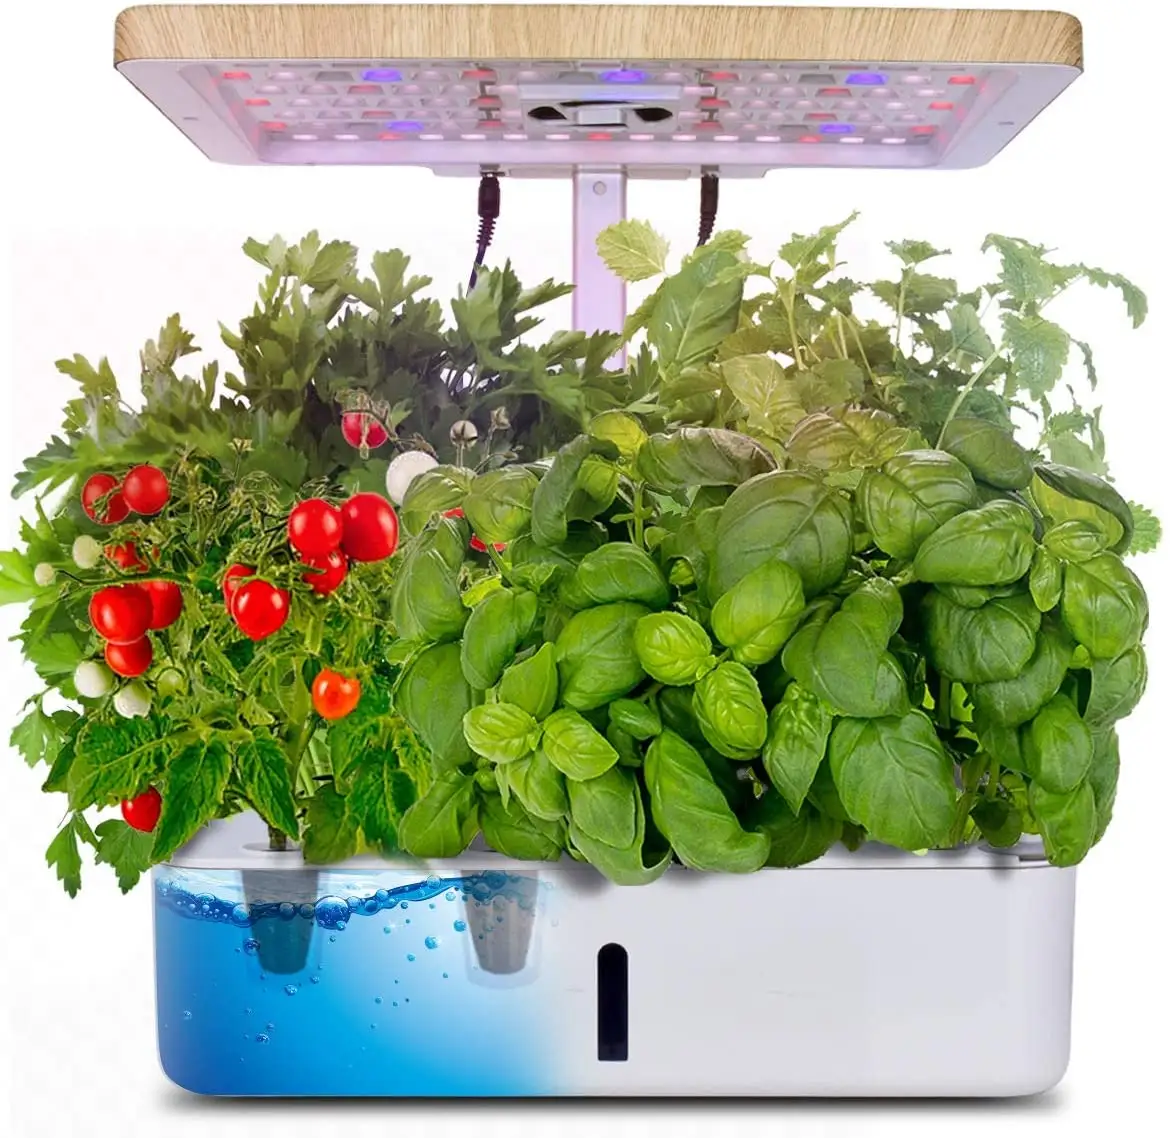 2023 sıcak satış hidroponik yetiştirme sistemi 12-hole masaüstü ev yeşil yapraklı bitki büyüme için hidroponik bitki kiti